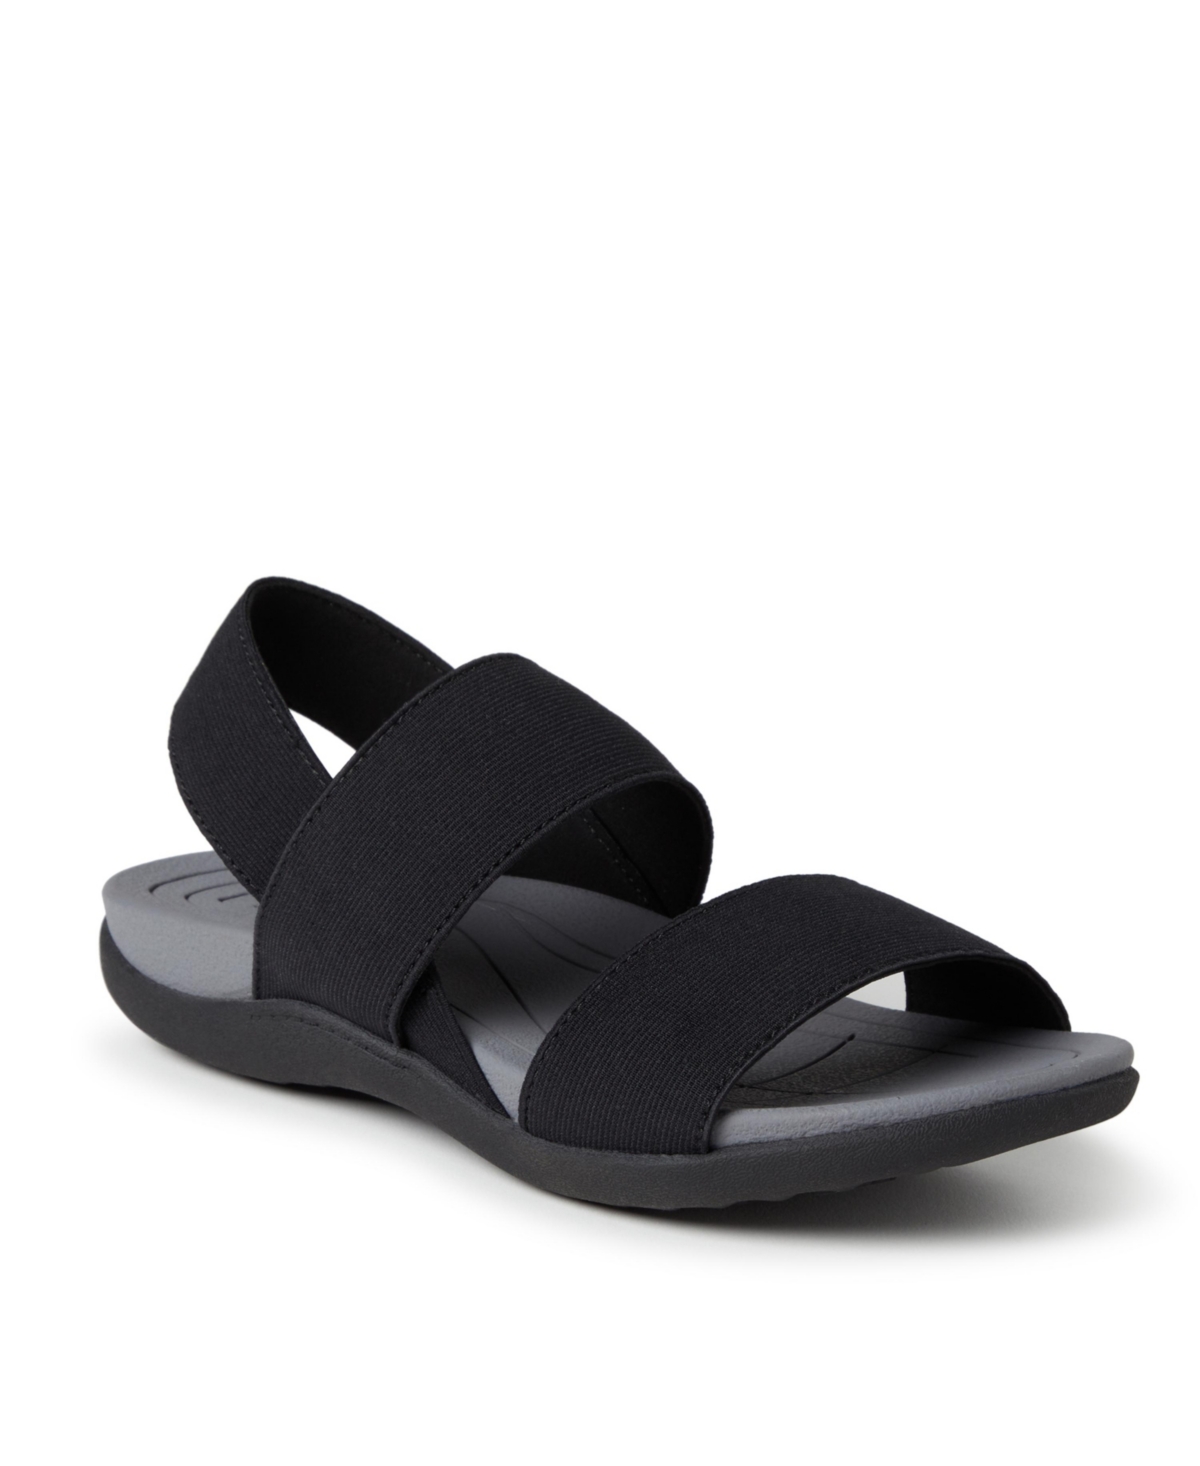 Original Comfort by Dearfoams Women's Sloane Back Strap Sandals - Black